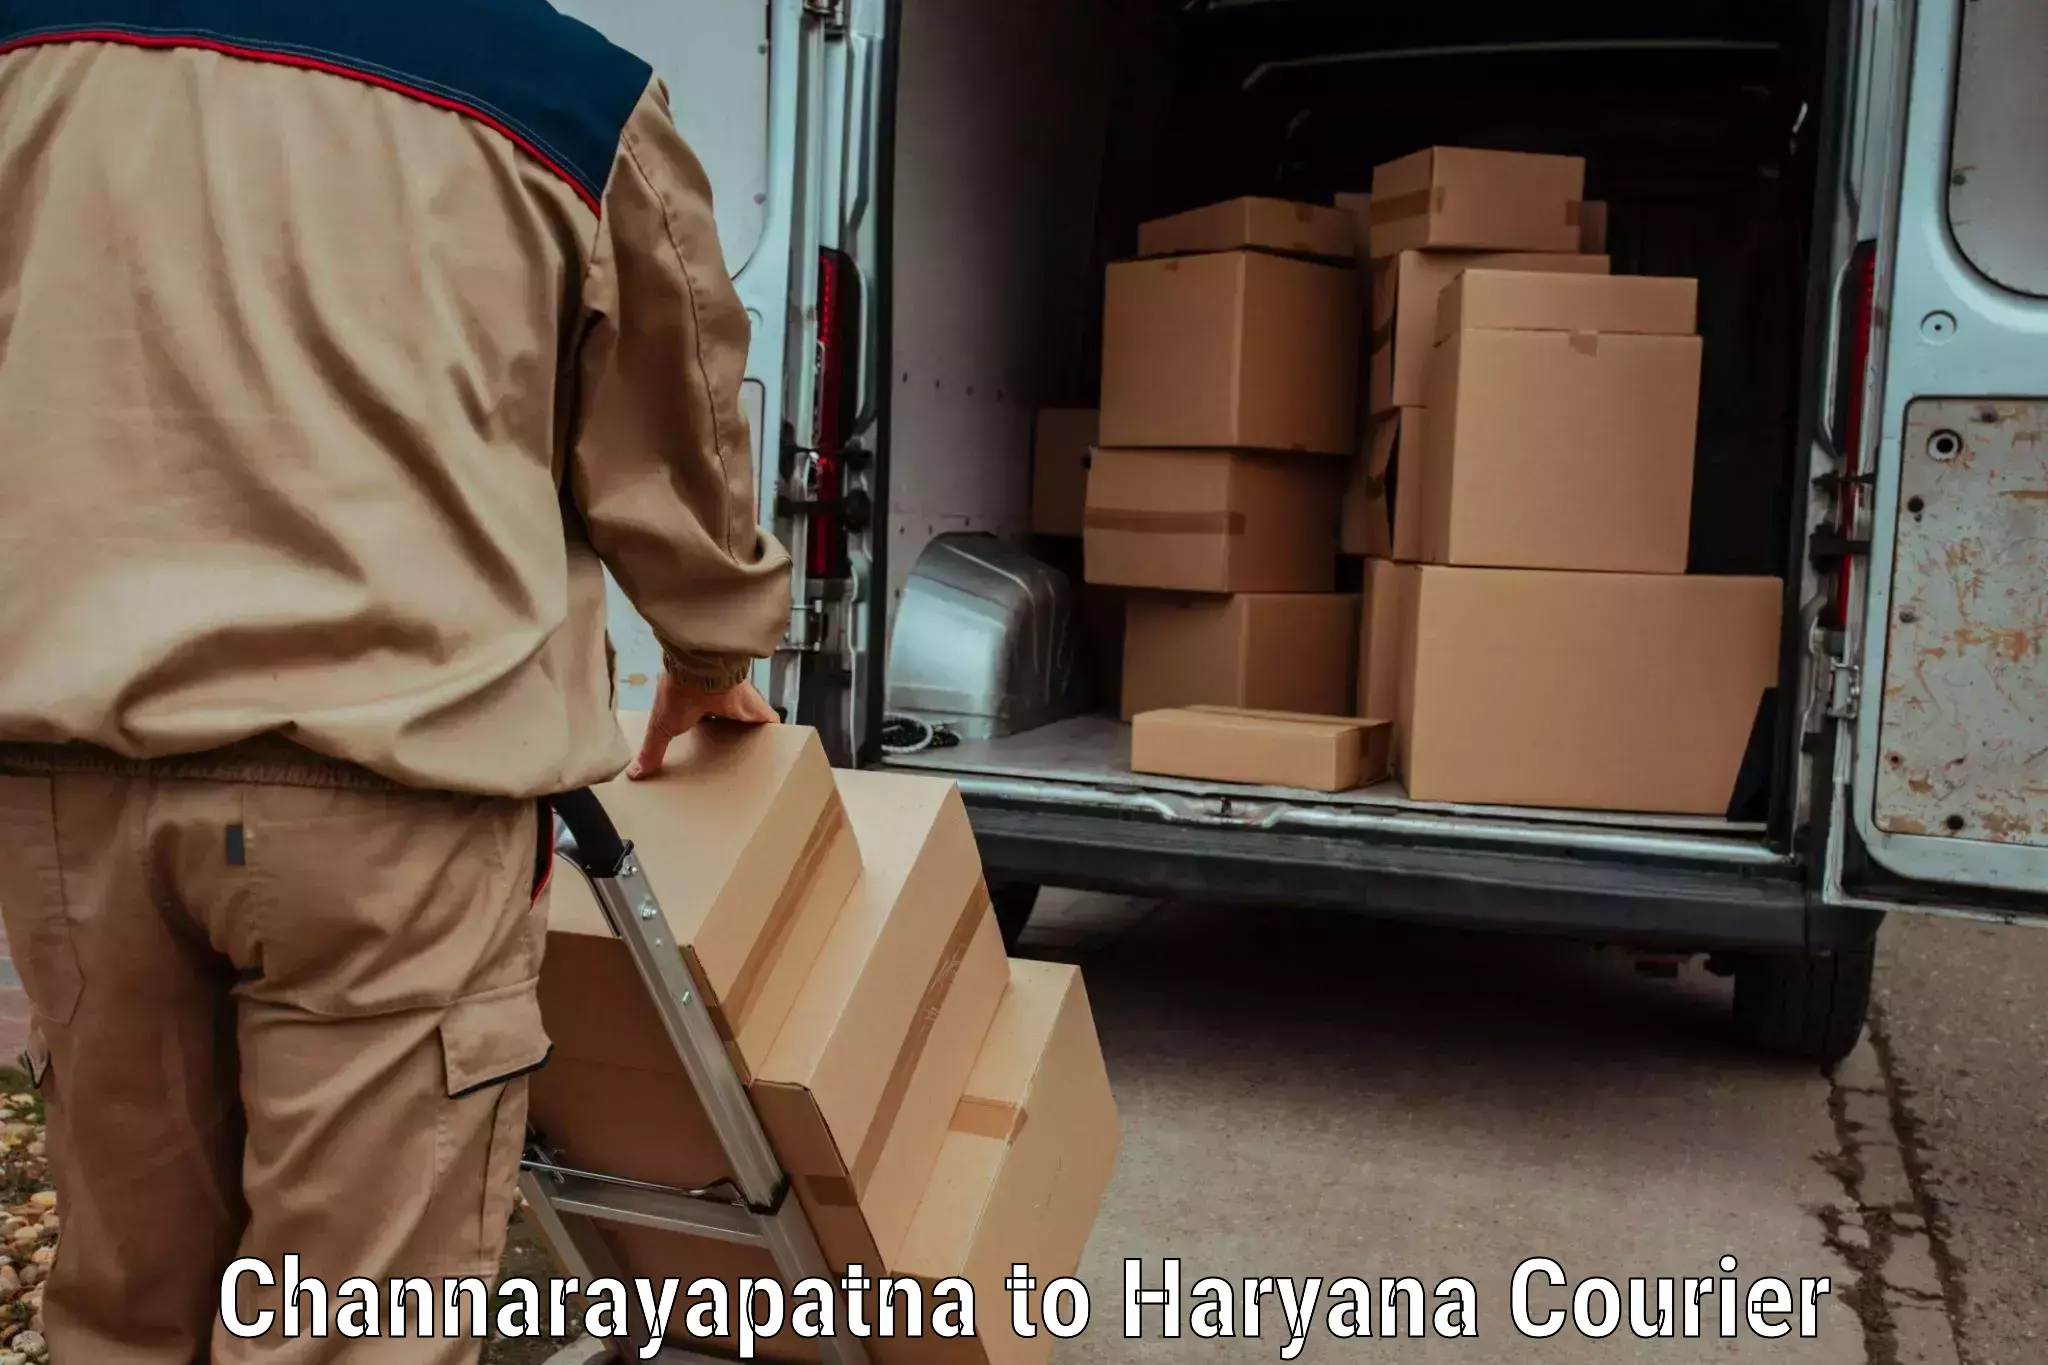 Express delivery solutions Channarayapatna to Pataudi